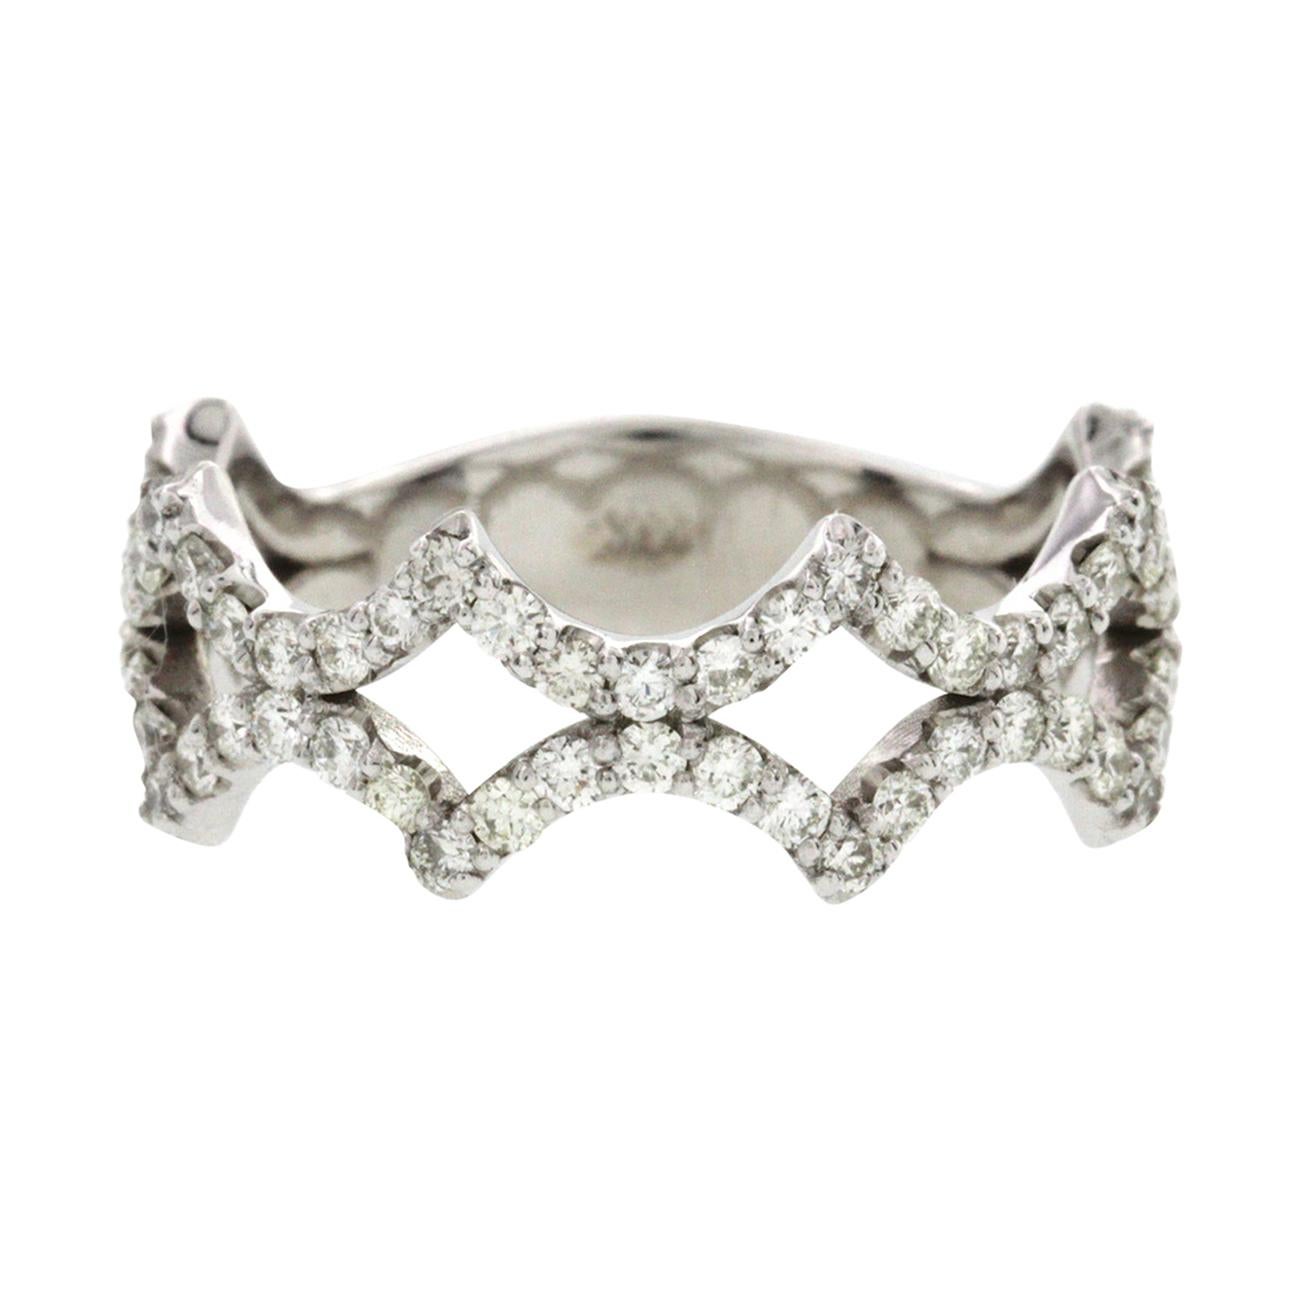 Fancy Art 14 Karat White Gold 0.85 Carat Diamonds Wedding Band Ring For Sale